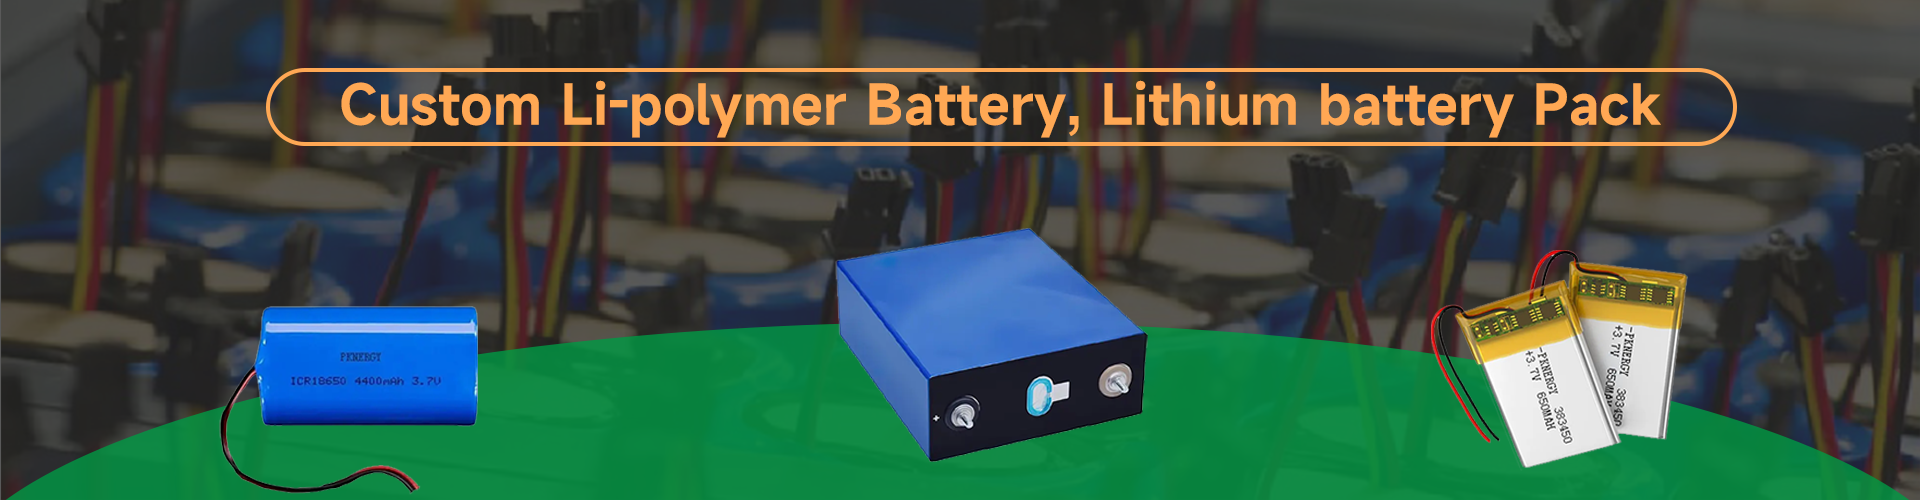 Batteria personalizzata ai polimeri di litio e batteria agli ioni di litio